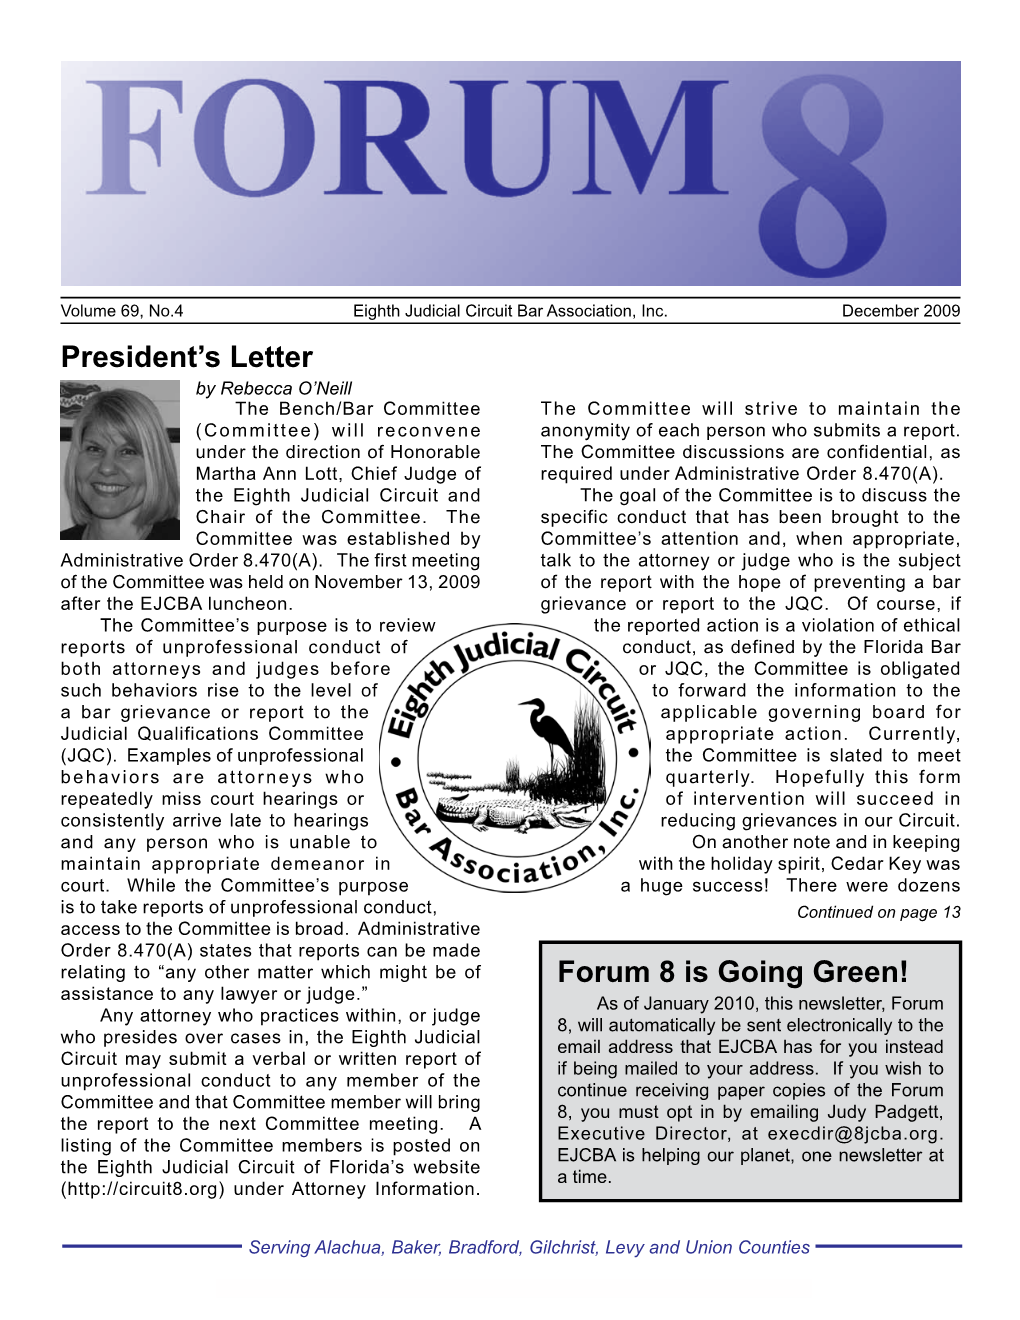 President's Letter Forum 8 Is Going Green!